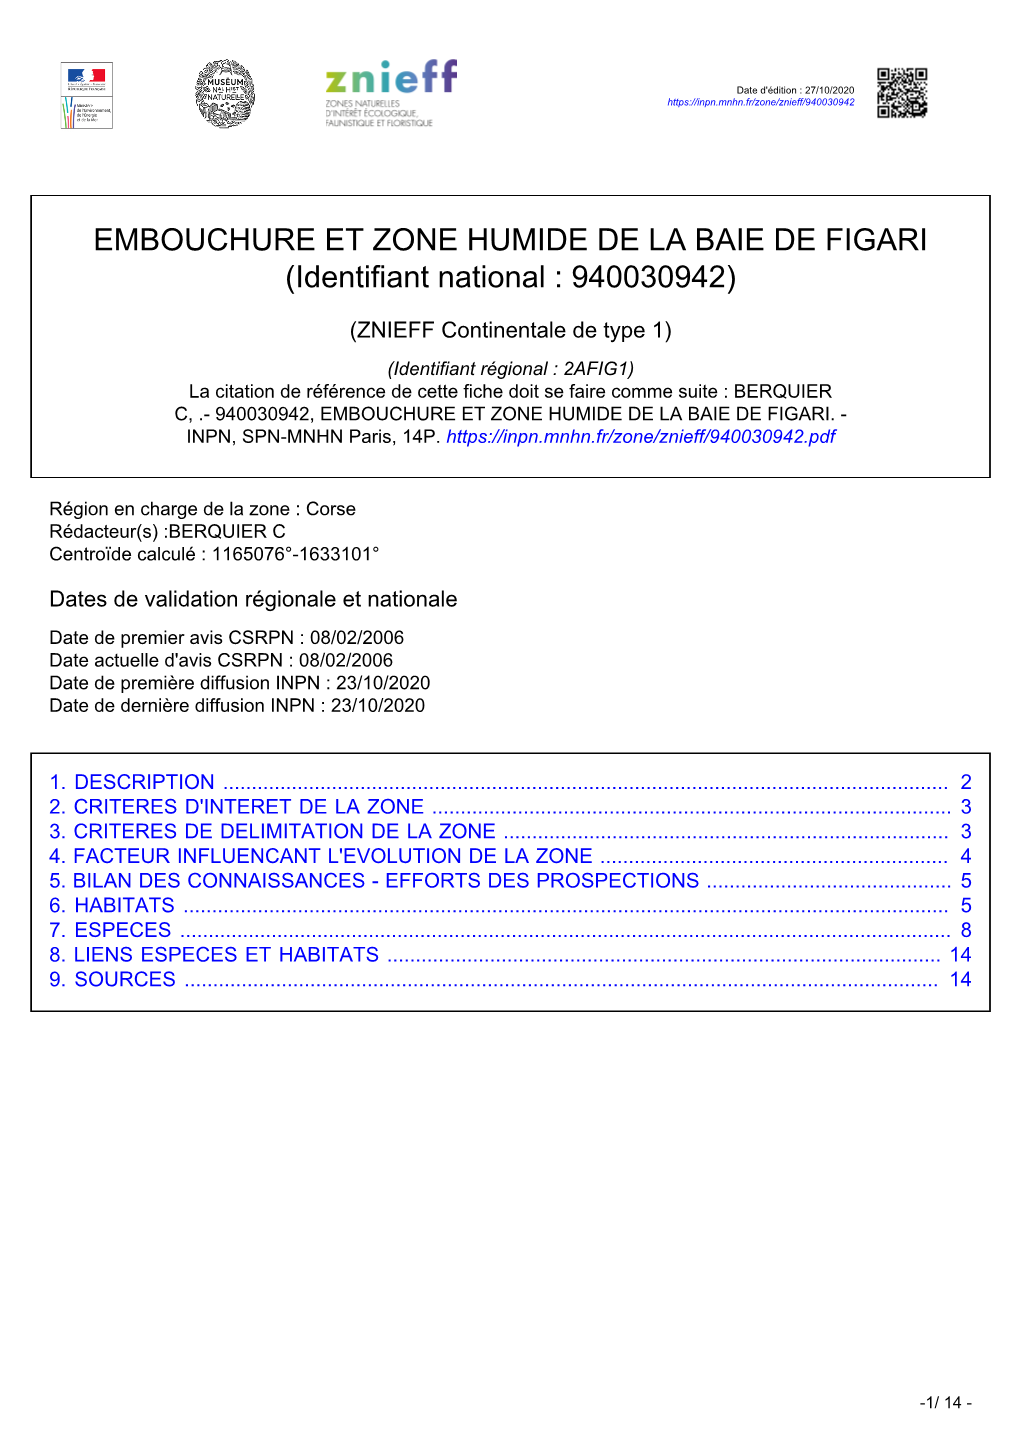 EMBOUCHURE ET ZONE HUMIDE DE LA BAIE DE FIGARI (Identifiant National : 940030942)